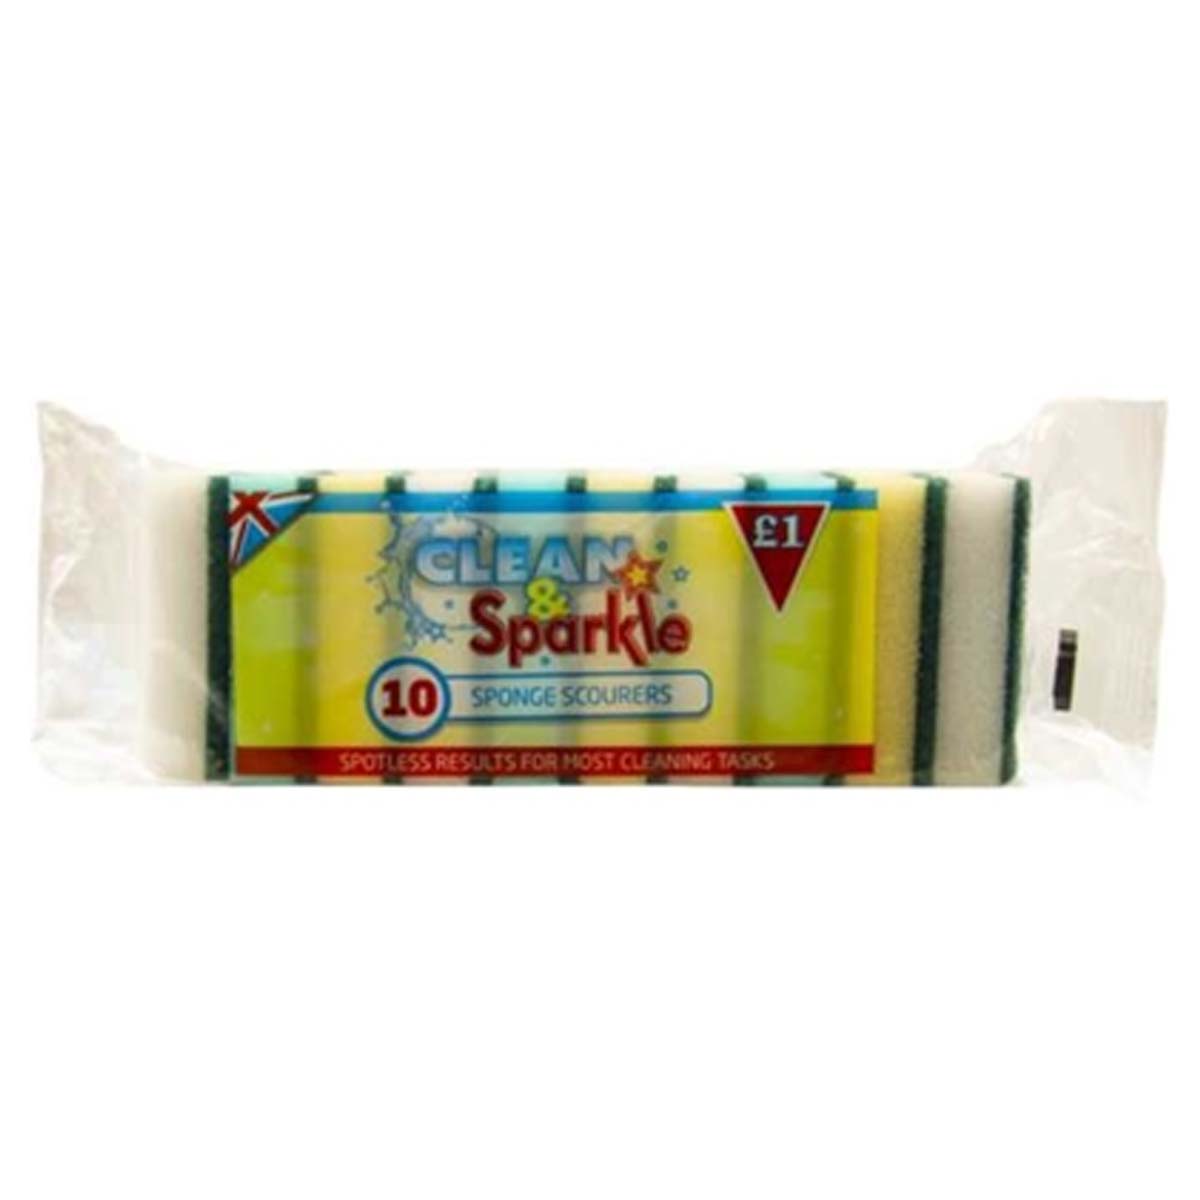 Clean & Sparkle - Sponge Scourers - 10pcs - Continental Food Store